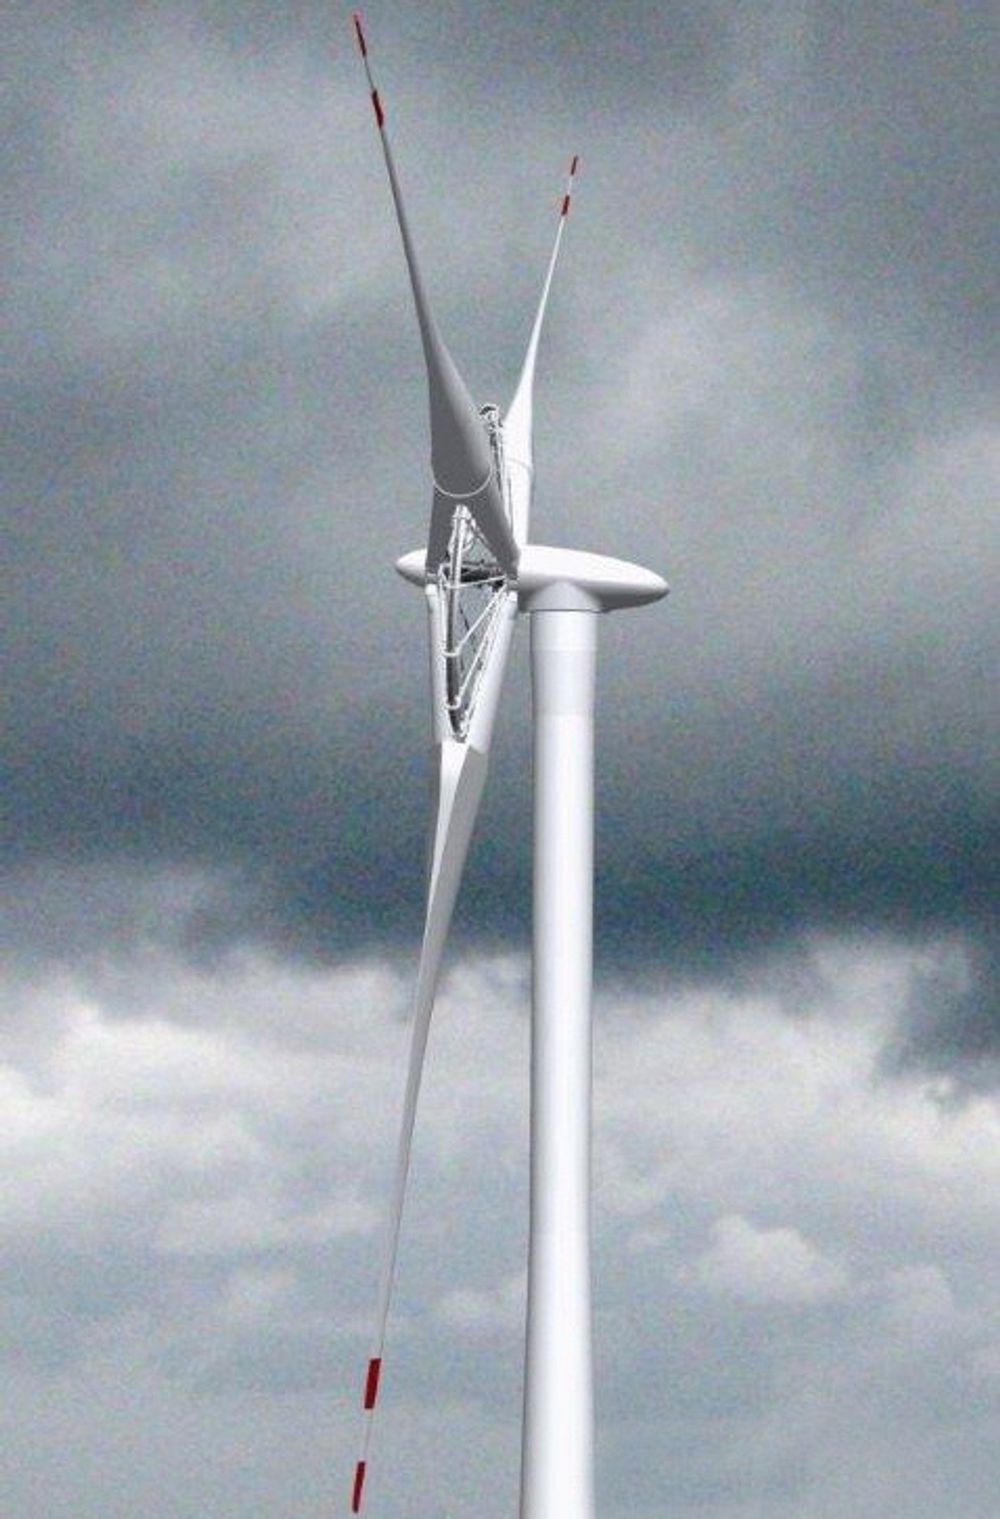 Statoren i Sway Turbines vindturbin består kun av kobber, og blir dermed lettere enn tradisjonelle statorer med jernkjerne. ILLUSTRASJON: Sway Turbine